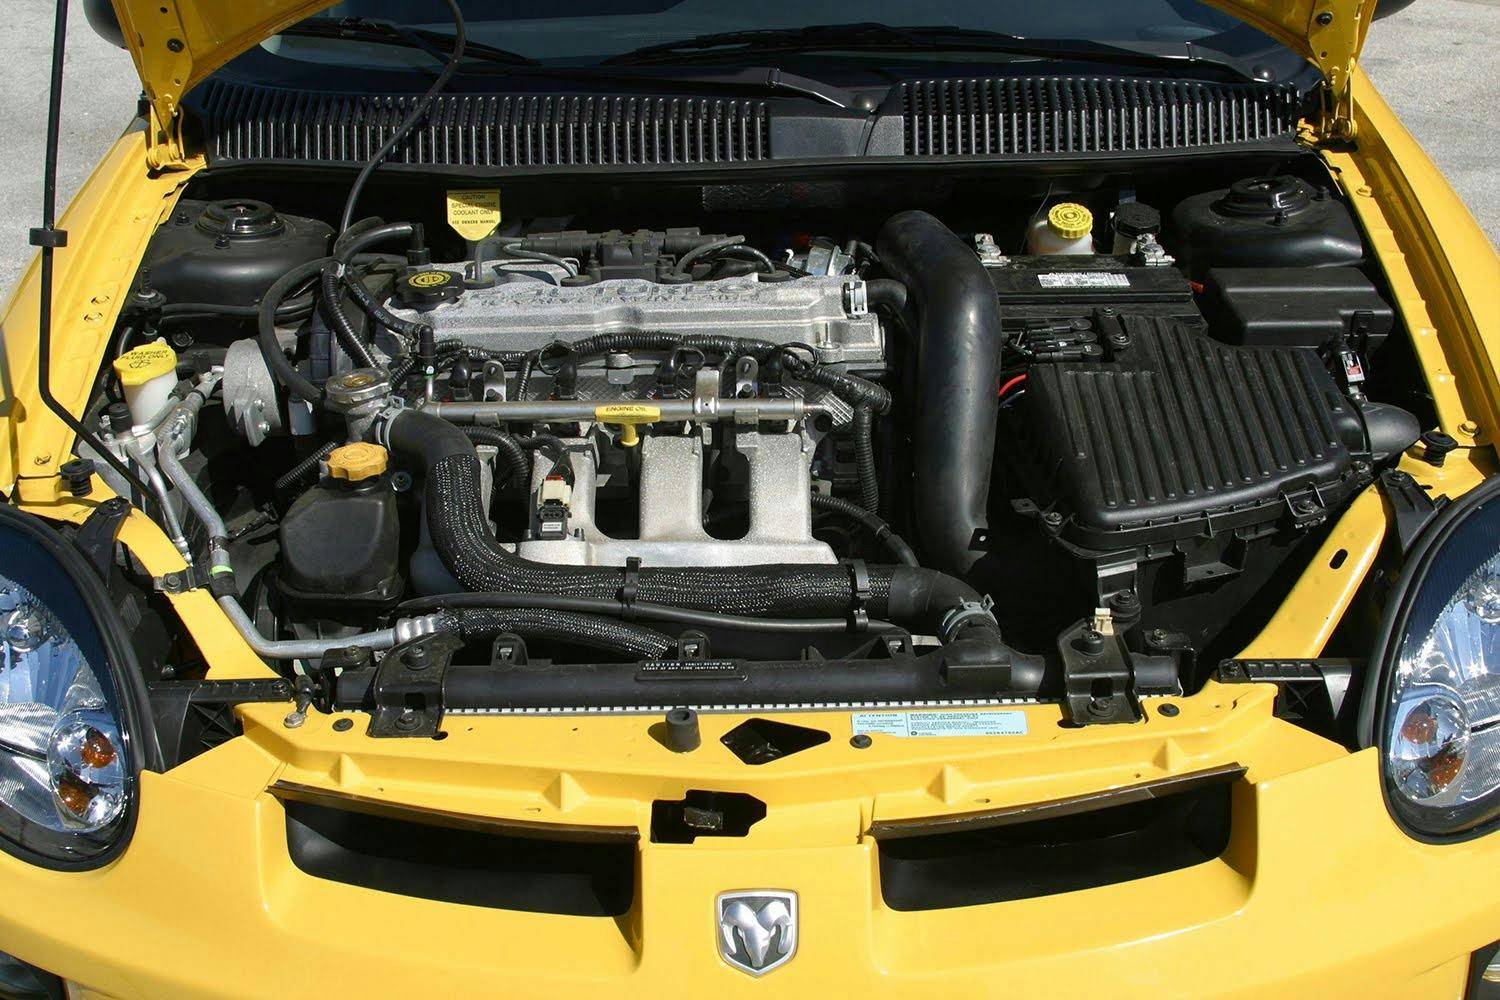 2003 Dodge Neon SRT-4